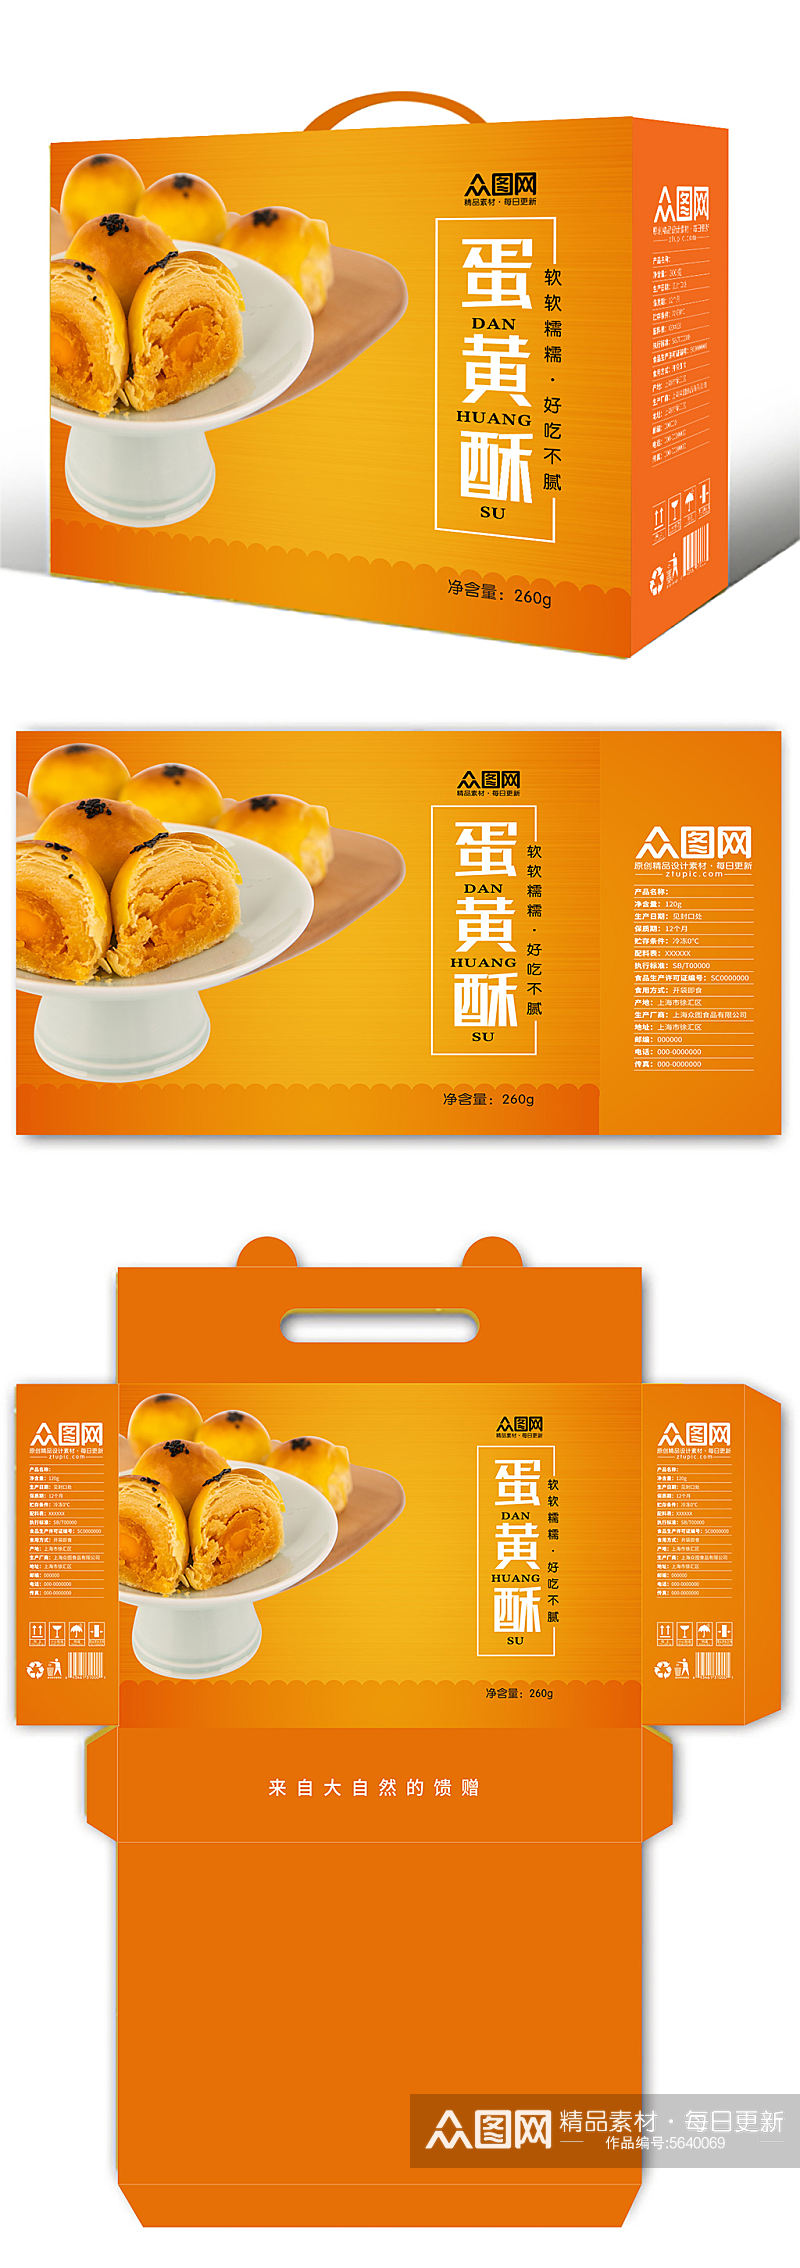 简约蛋黄酥美食礼盒包装设计素材